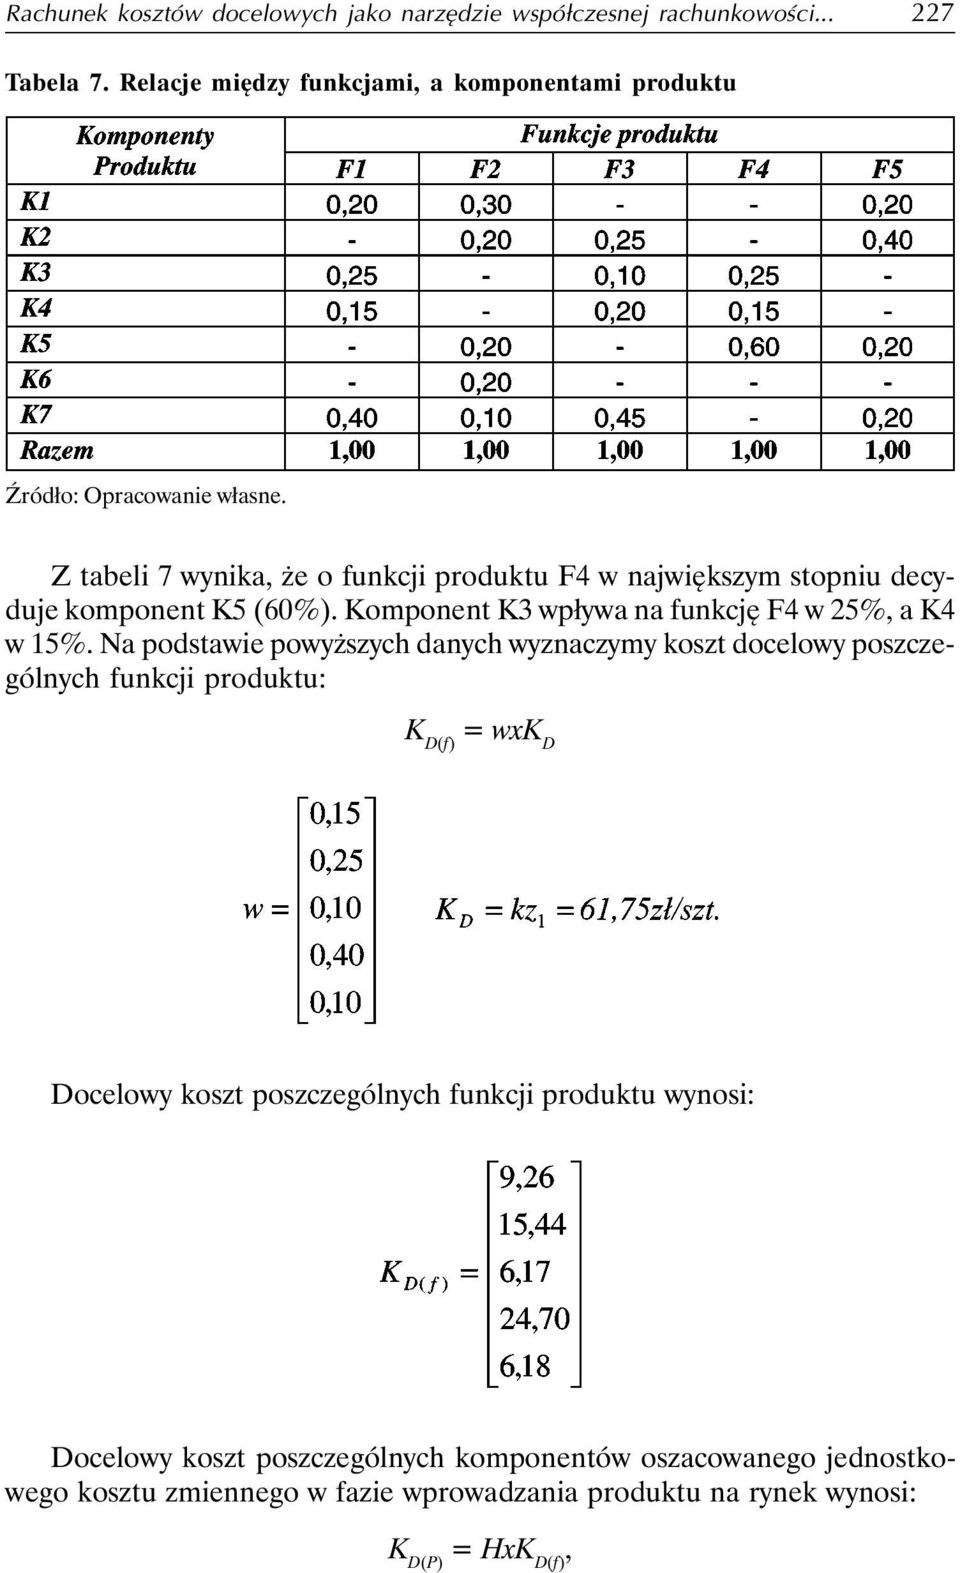 Z tabeli 7 wynika, że o funkcji produktu F4 w największym stopniu decyduje komponent K5 (60%). Komponent K3 wpływa na funkcję F4 w 25%, a K4 w 15%.